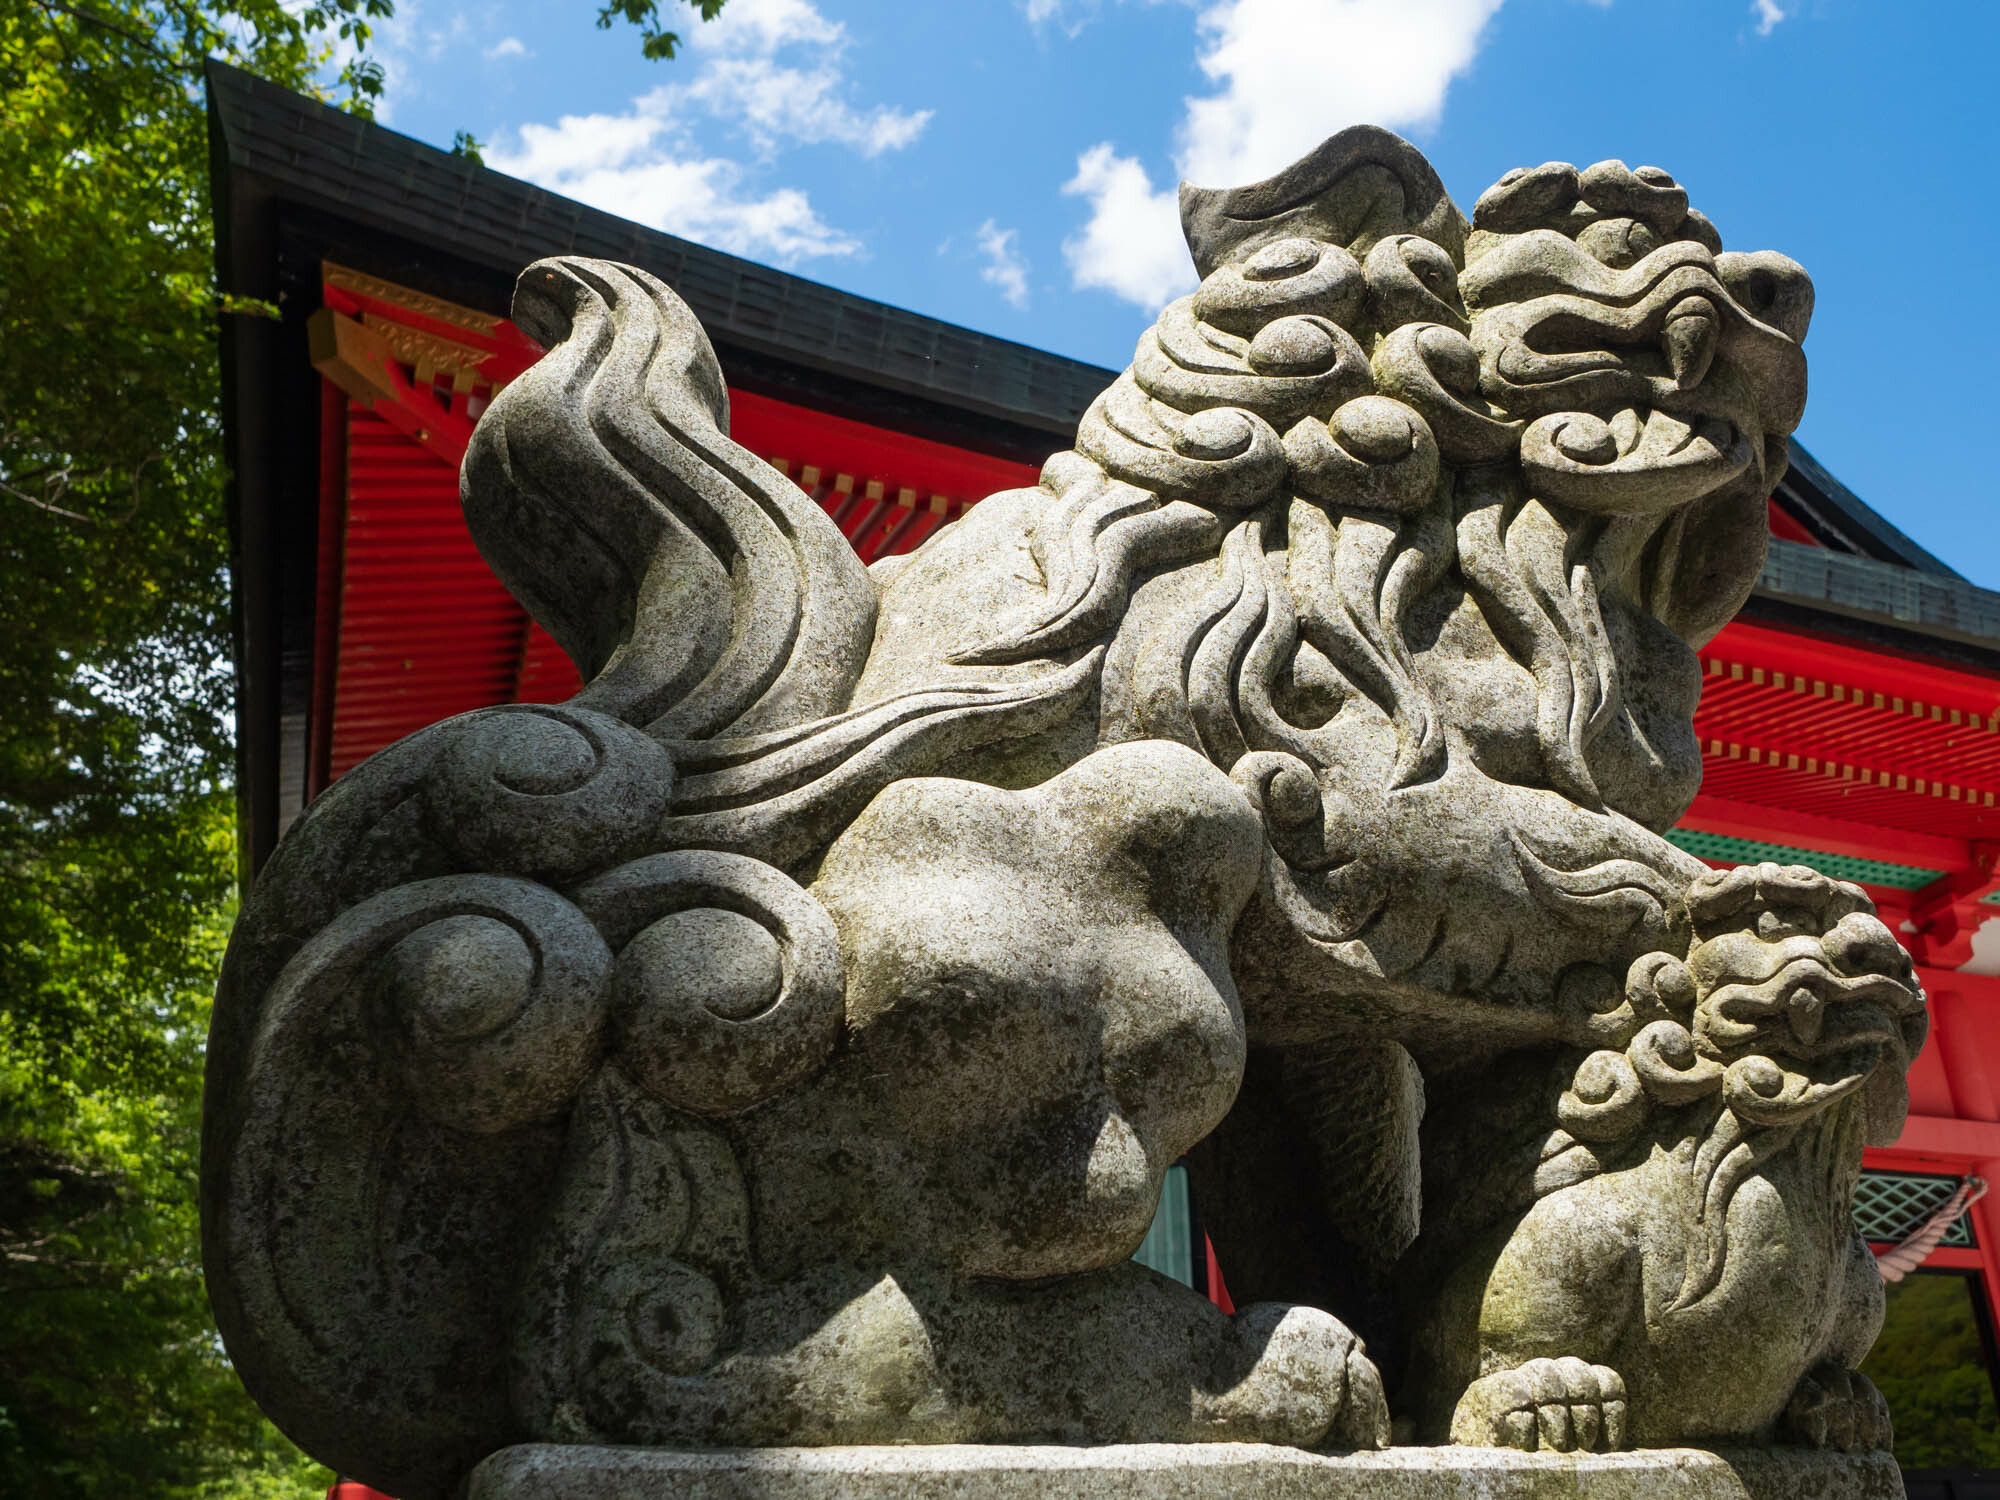 赤城神社の狛犬。大きな狛犬と瓜二つの小さな狛犬が可愛らしい。